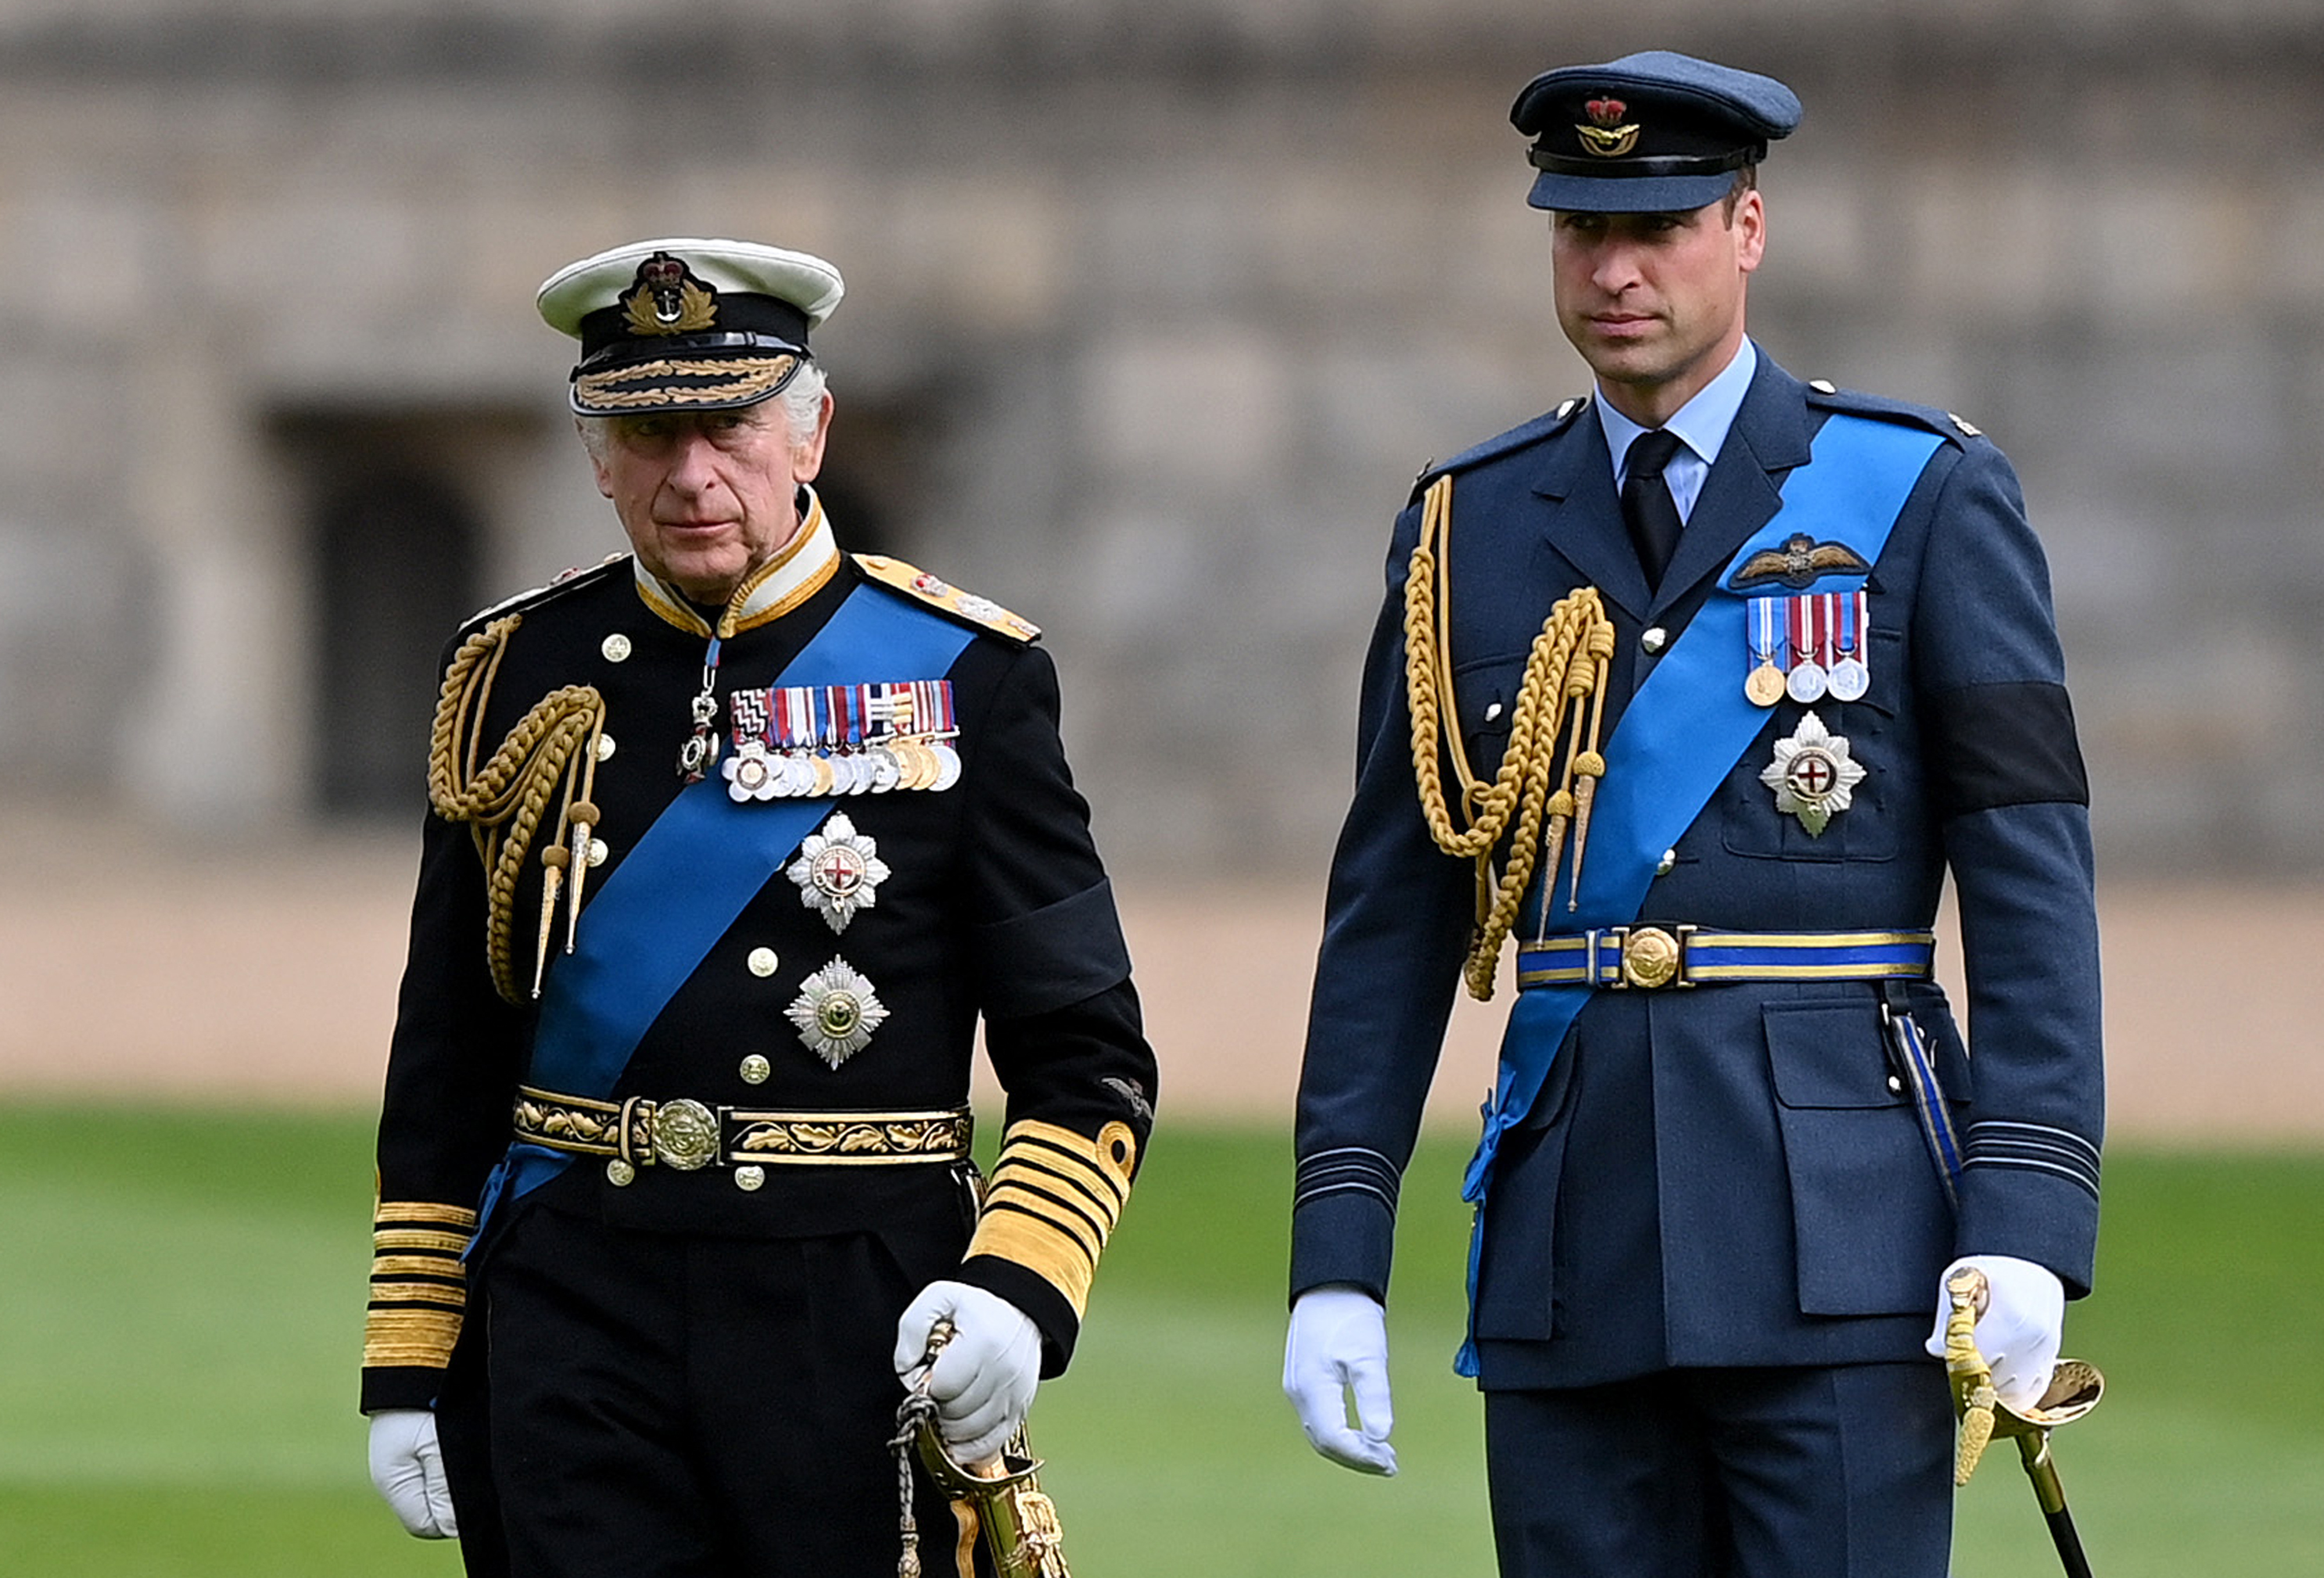 El rey Charles III y el príncipe William antes de la ceremonia de entierro de la difunta reina Elizabeth II en Windsor, Inglaterra, el 19 de septiembre de 2022 | Fuente: Getty Images